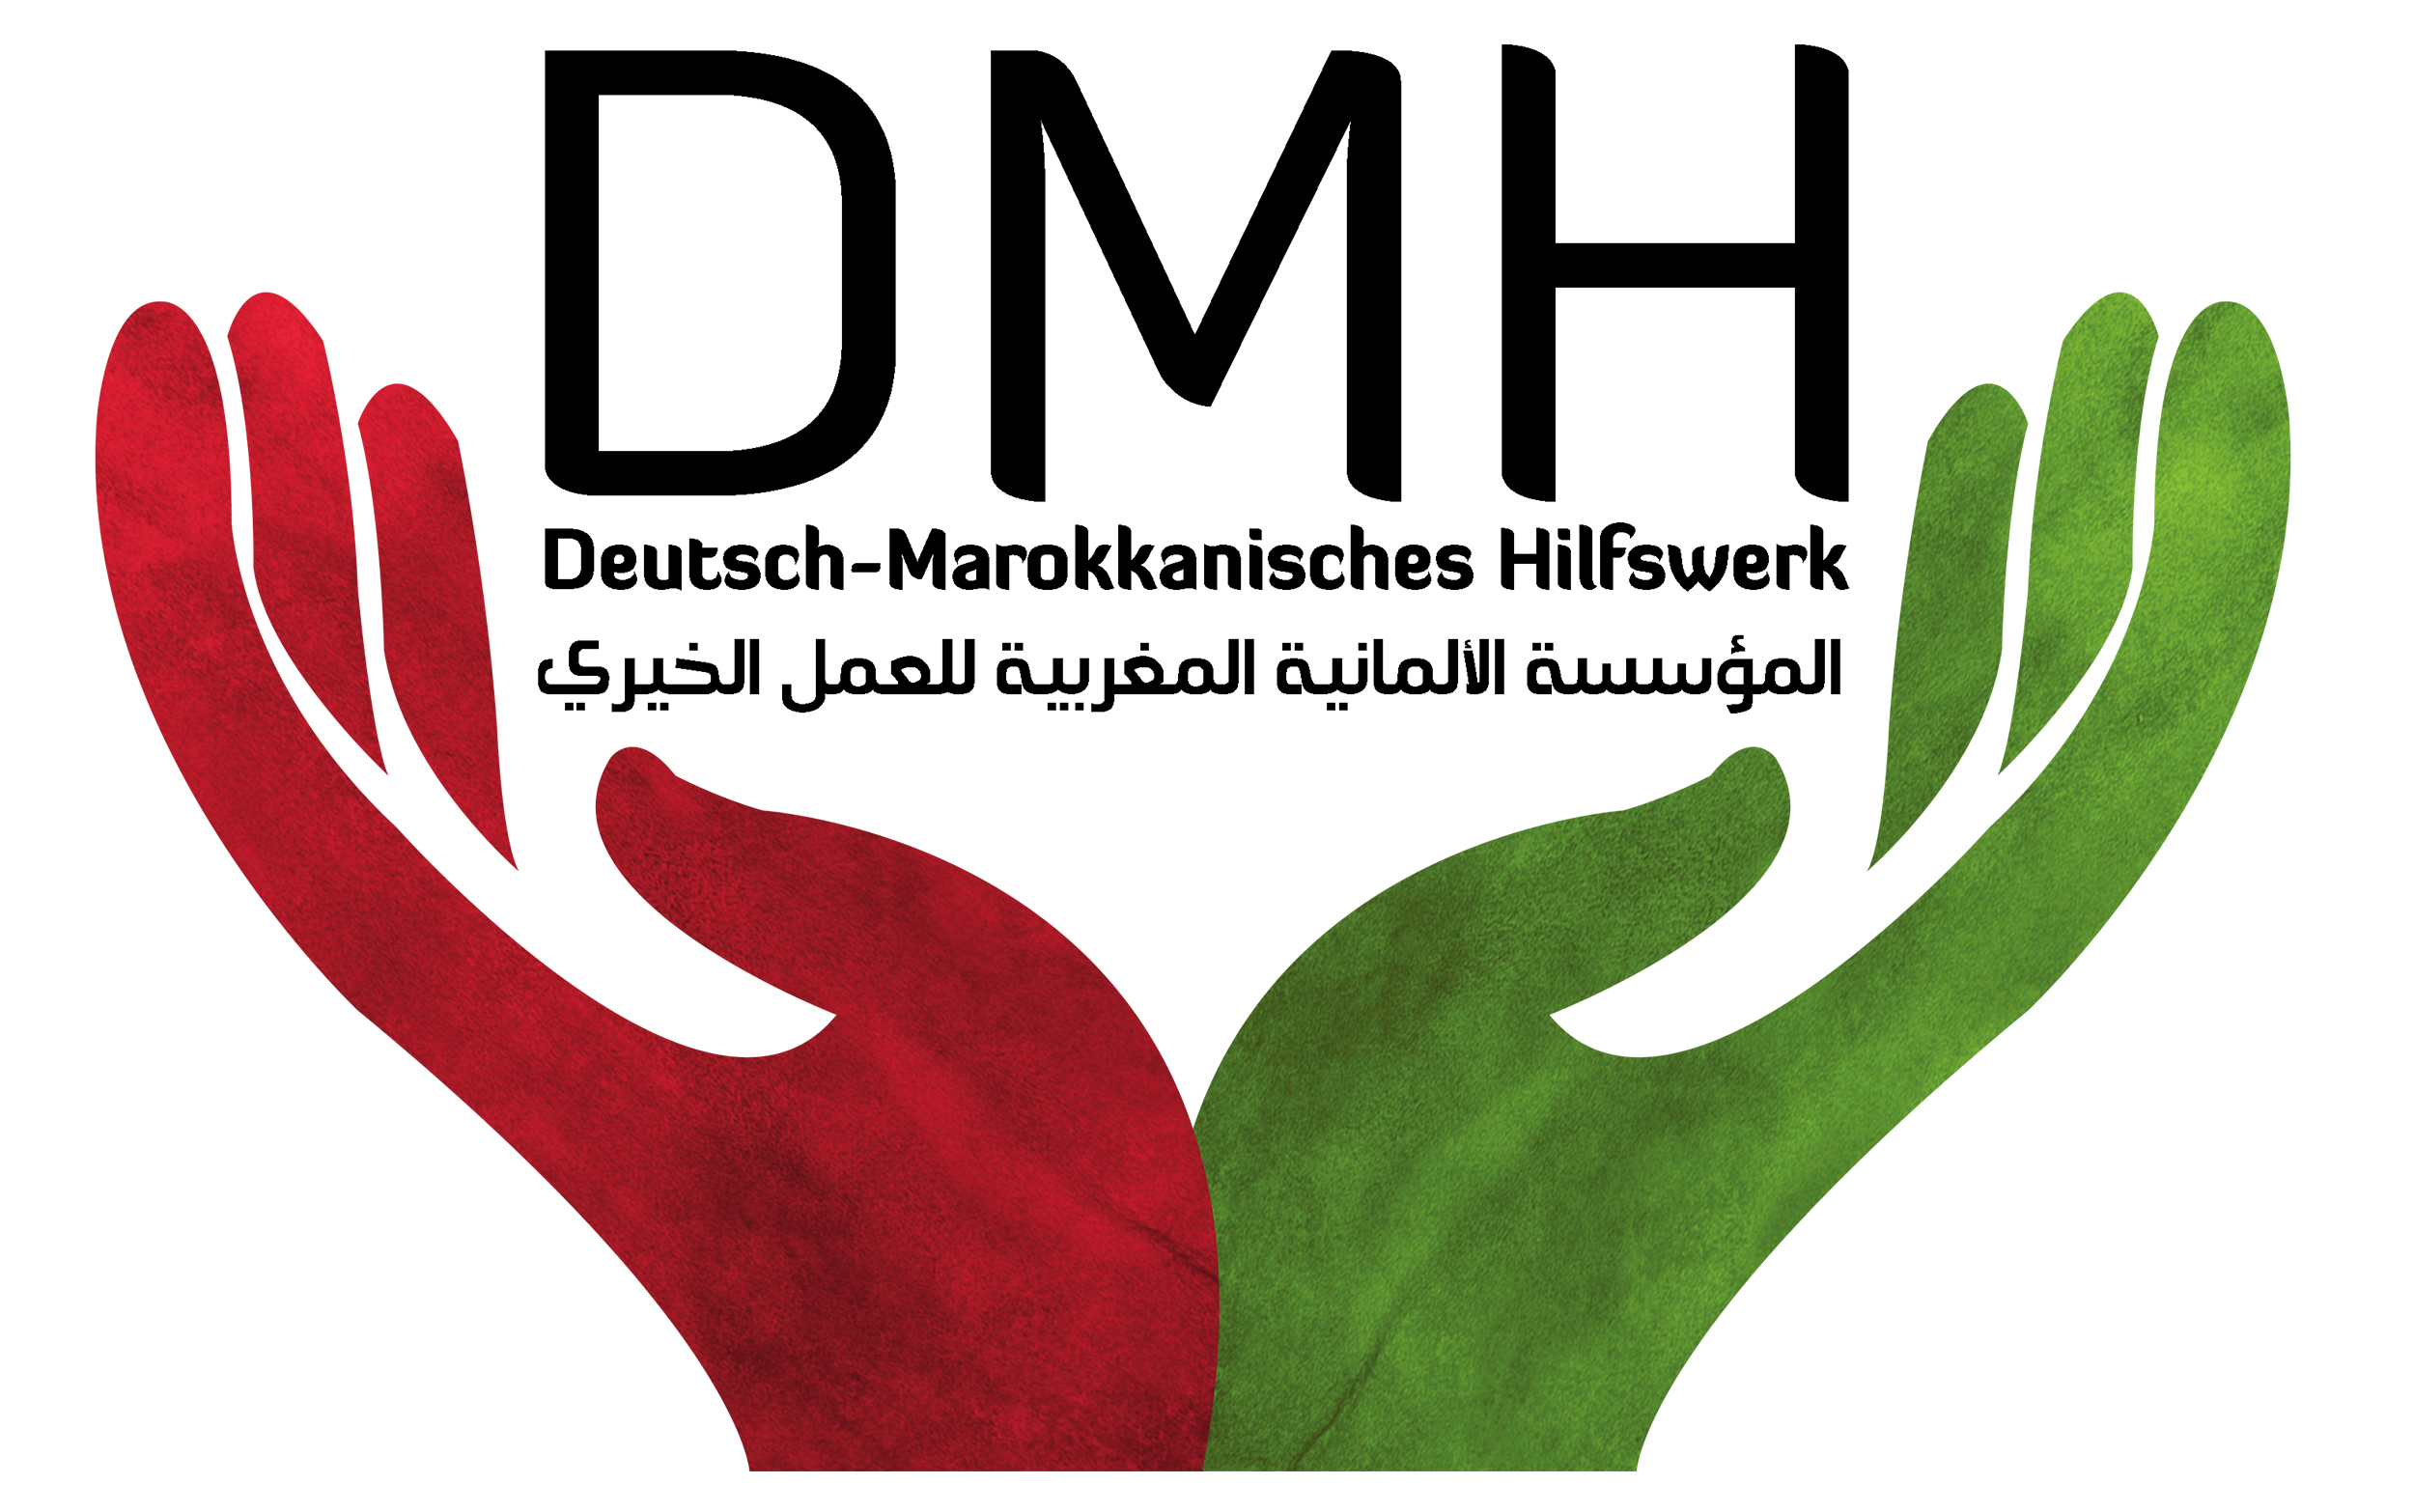 Deutsch-Marokkanisches Hilfswerk e.V.